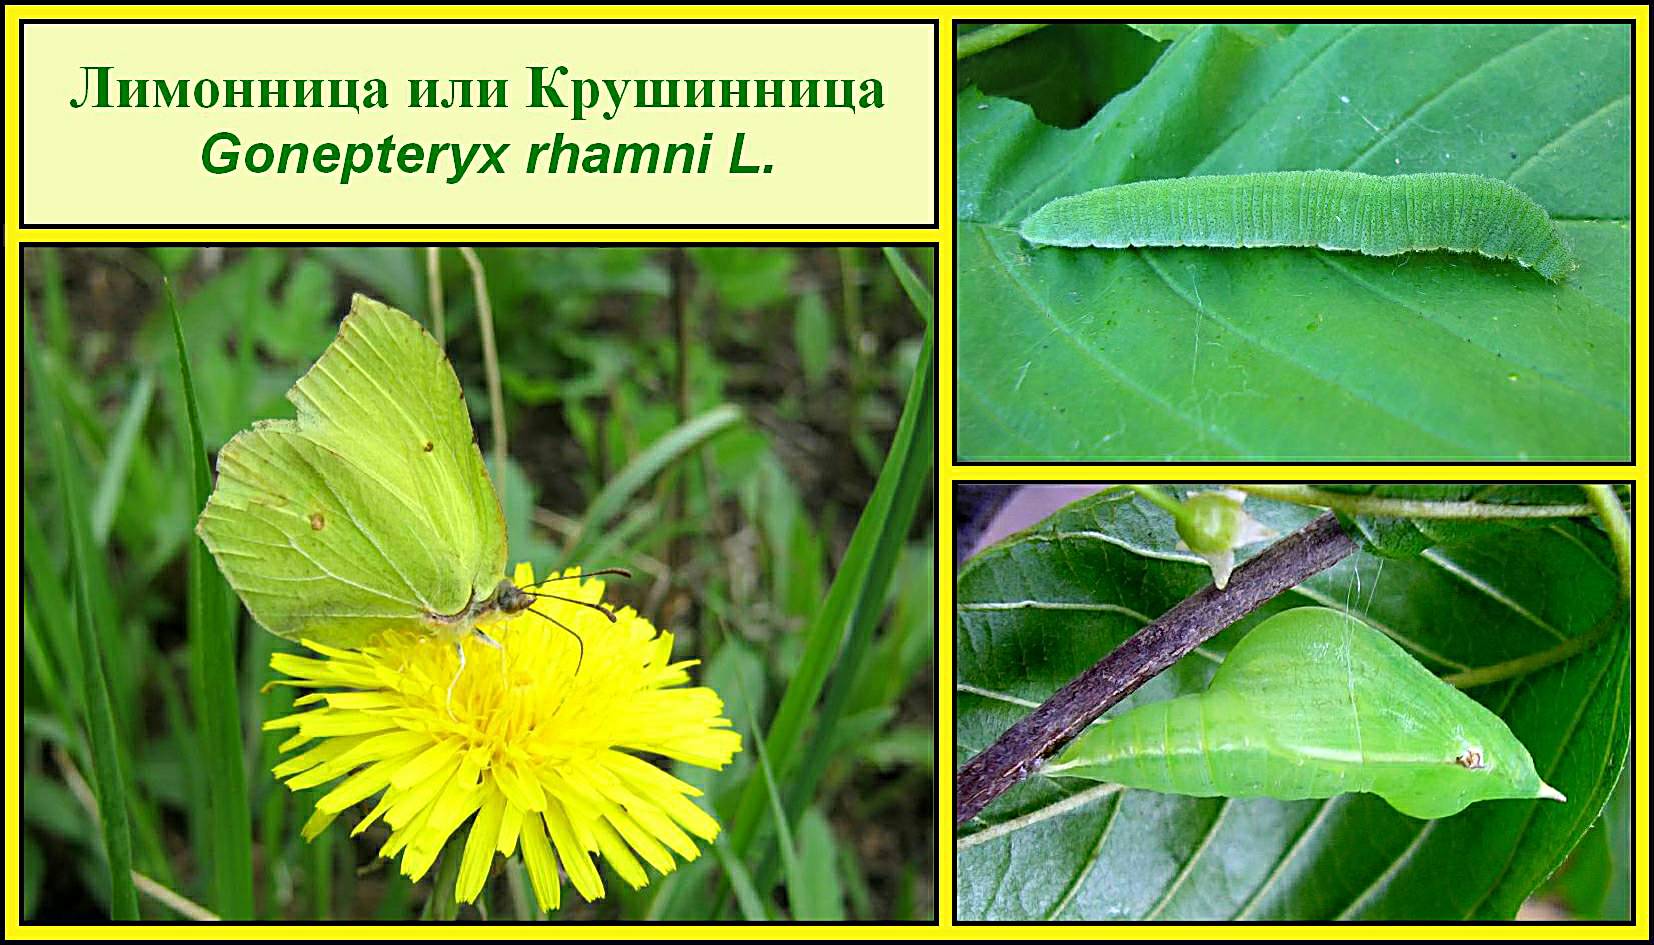 Gonepteryx rhamni гусеница